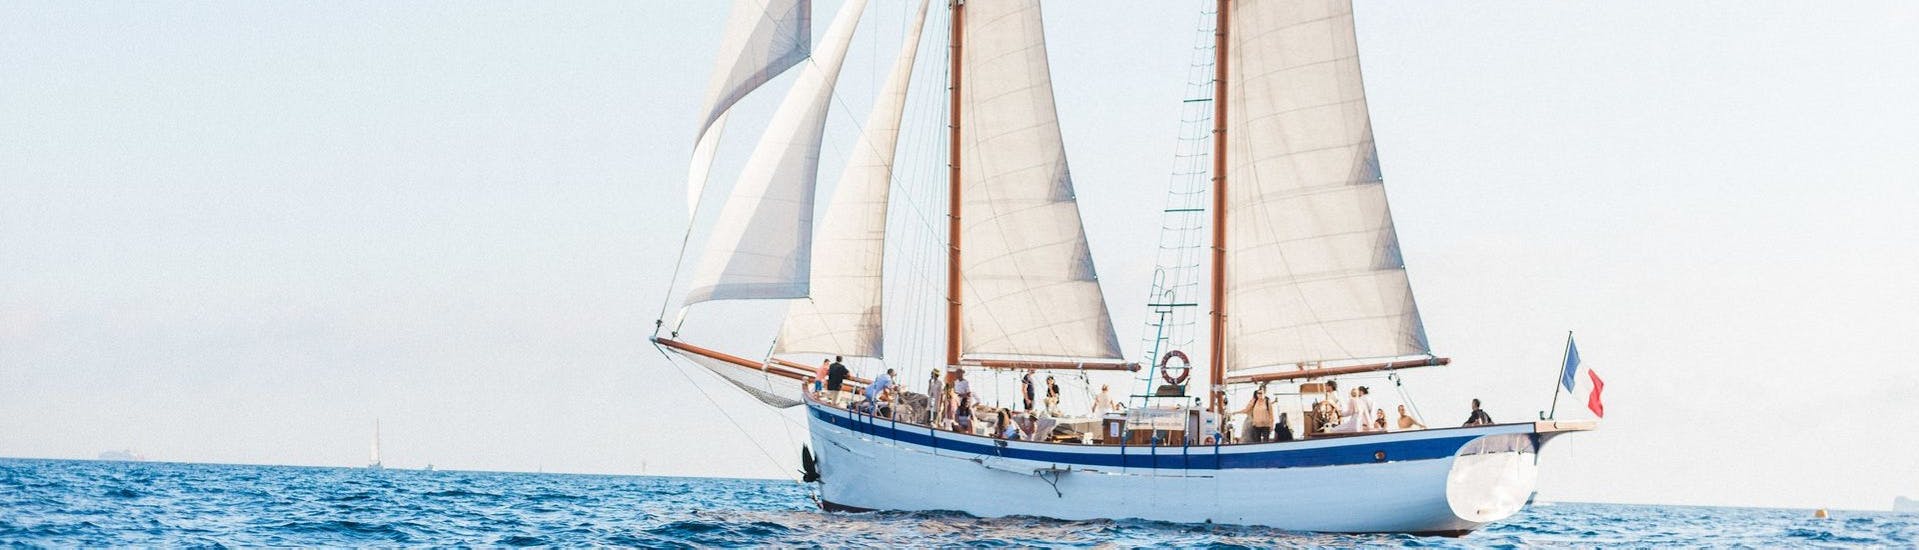 Notre fier bateau La Goélette Alliance photographié lors d'une Balade privée en voilier aux calanques de Marseille ou aux îles du Frioul.